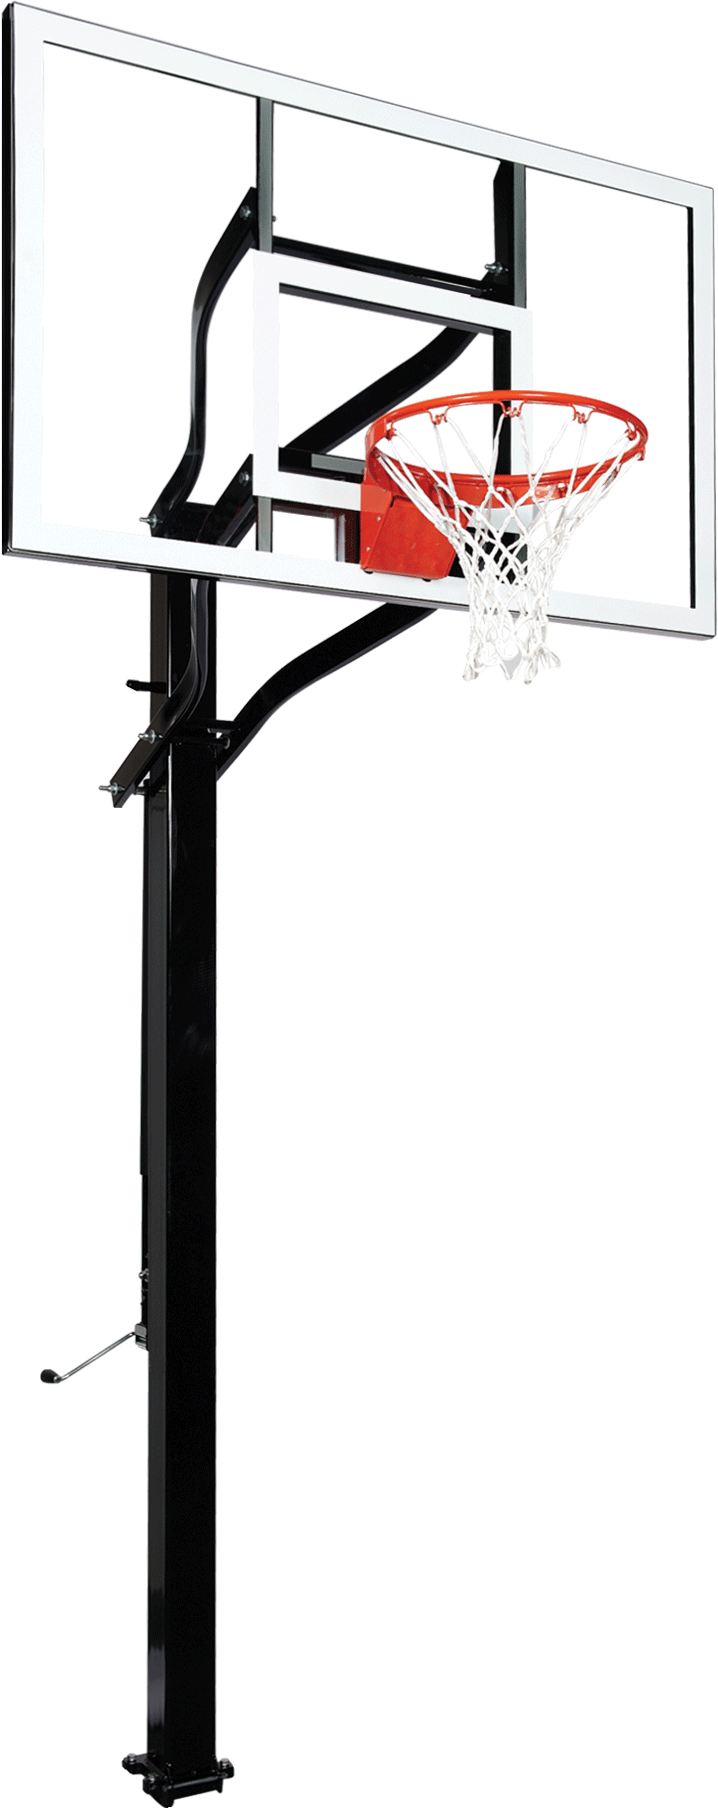 Goalsetter X560 basketball hoop - Glass - Collegiate Breakaway Rim_1